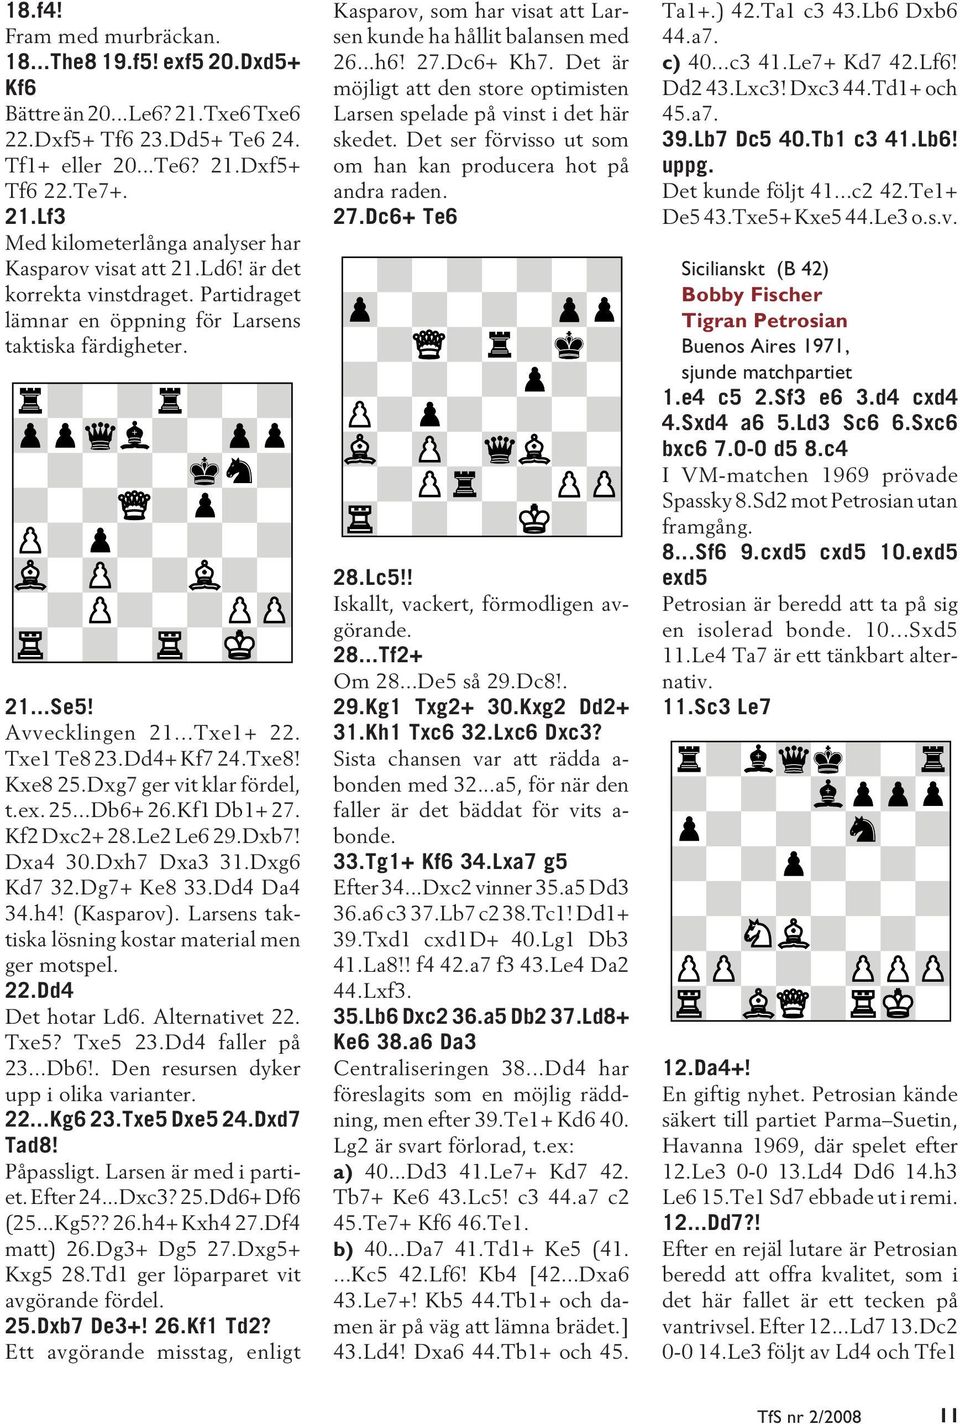 Dxg7 ger vit klar fördel, t.ex. 25...Db6+ 26.Kf1 Db1+ 27. Kf2 Dxc2+ 28.Le2 Le6 29.Dxb7! Dxa4 30.Dxh7 Dxa3 31.Dxg6 Kd7 32.Dg7+ Ke8 33.Dd4 Da4 34.h4! (Kasparov).